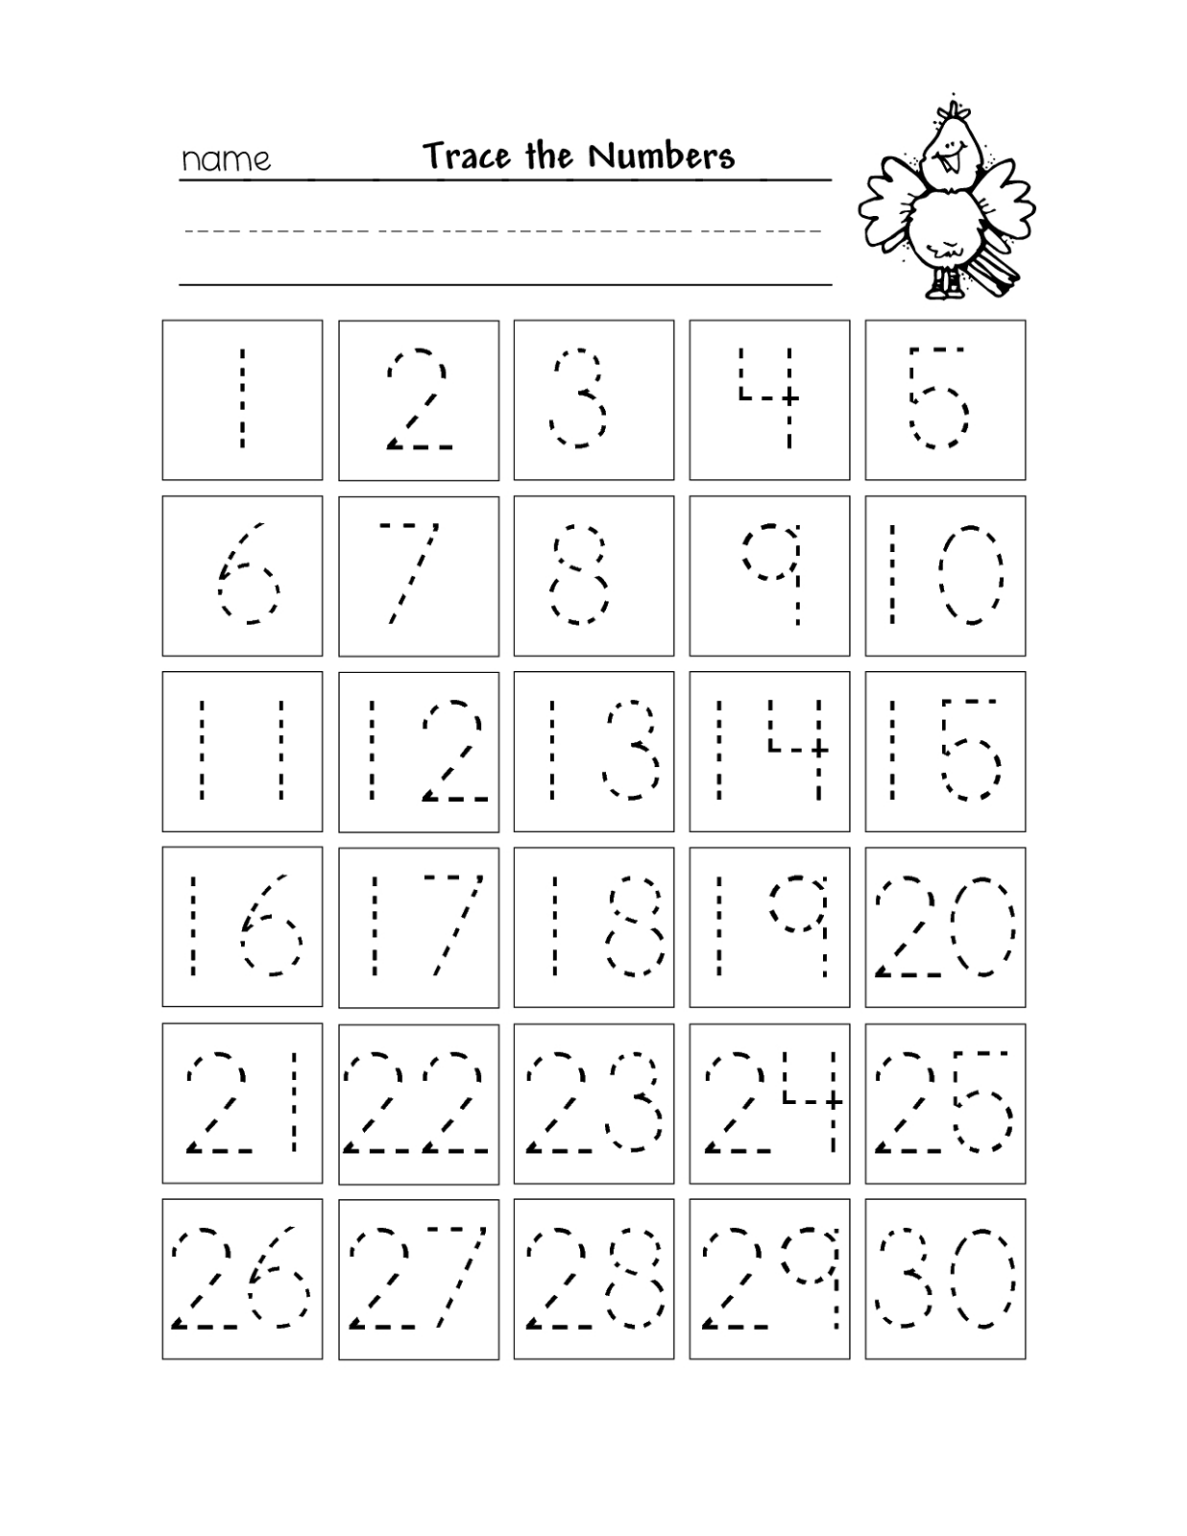 free-printable-tracing-numbers-1-20-worksheets-free-printable